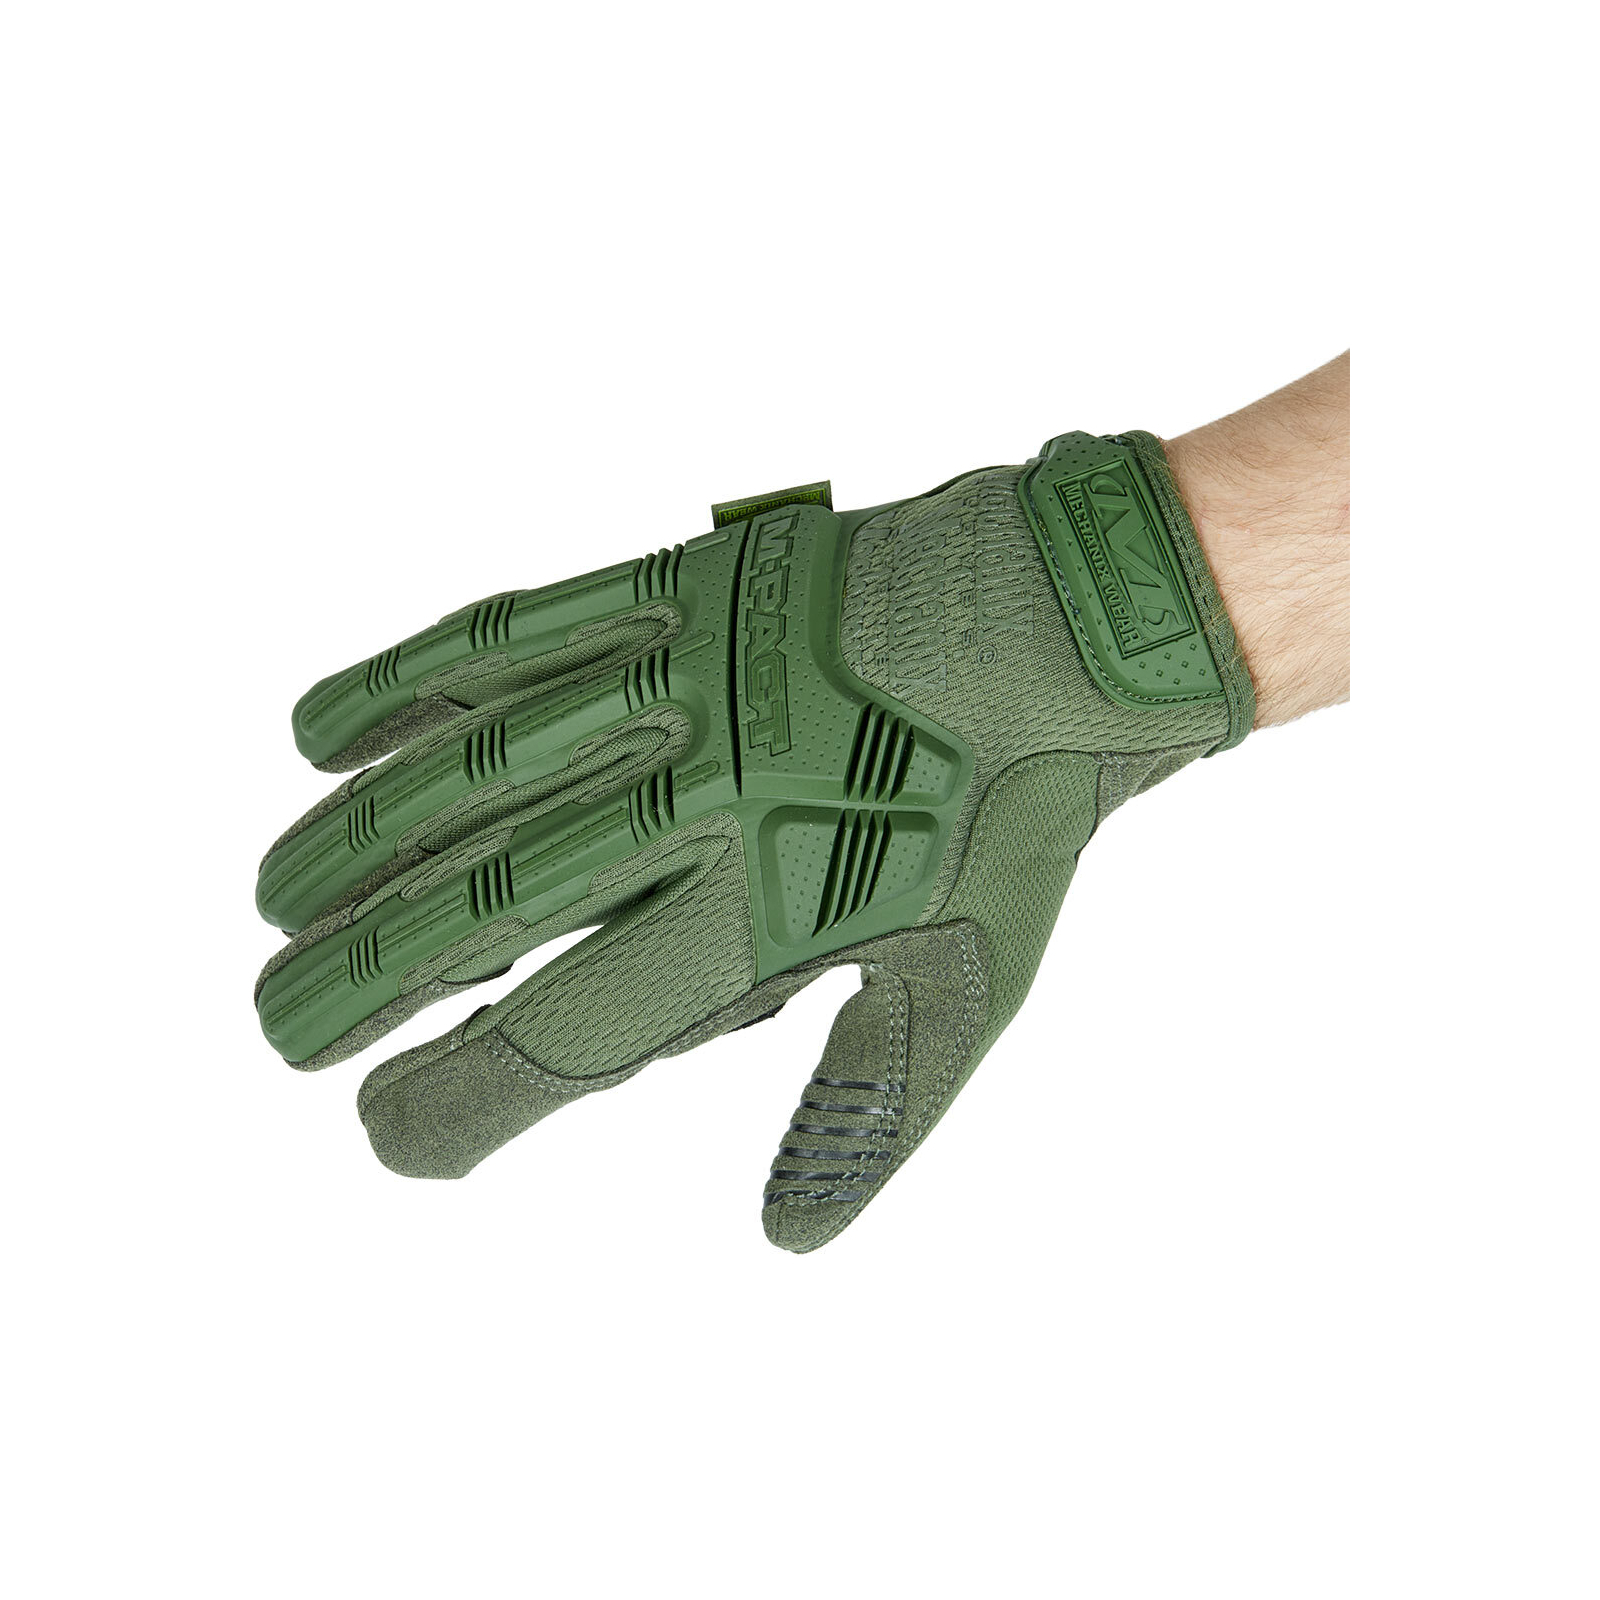 Тактические перчатки Mechanix M-Pact M Olive Drab (MPT-60-009) изображение 3